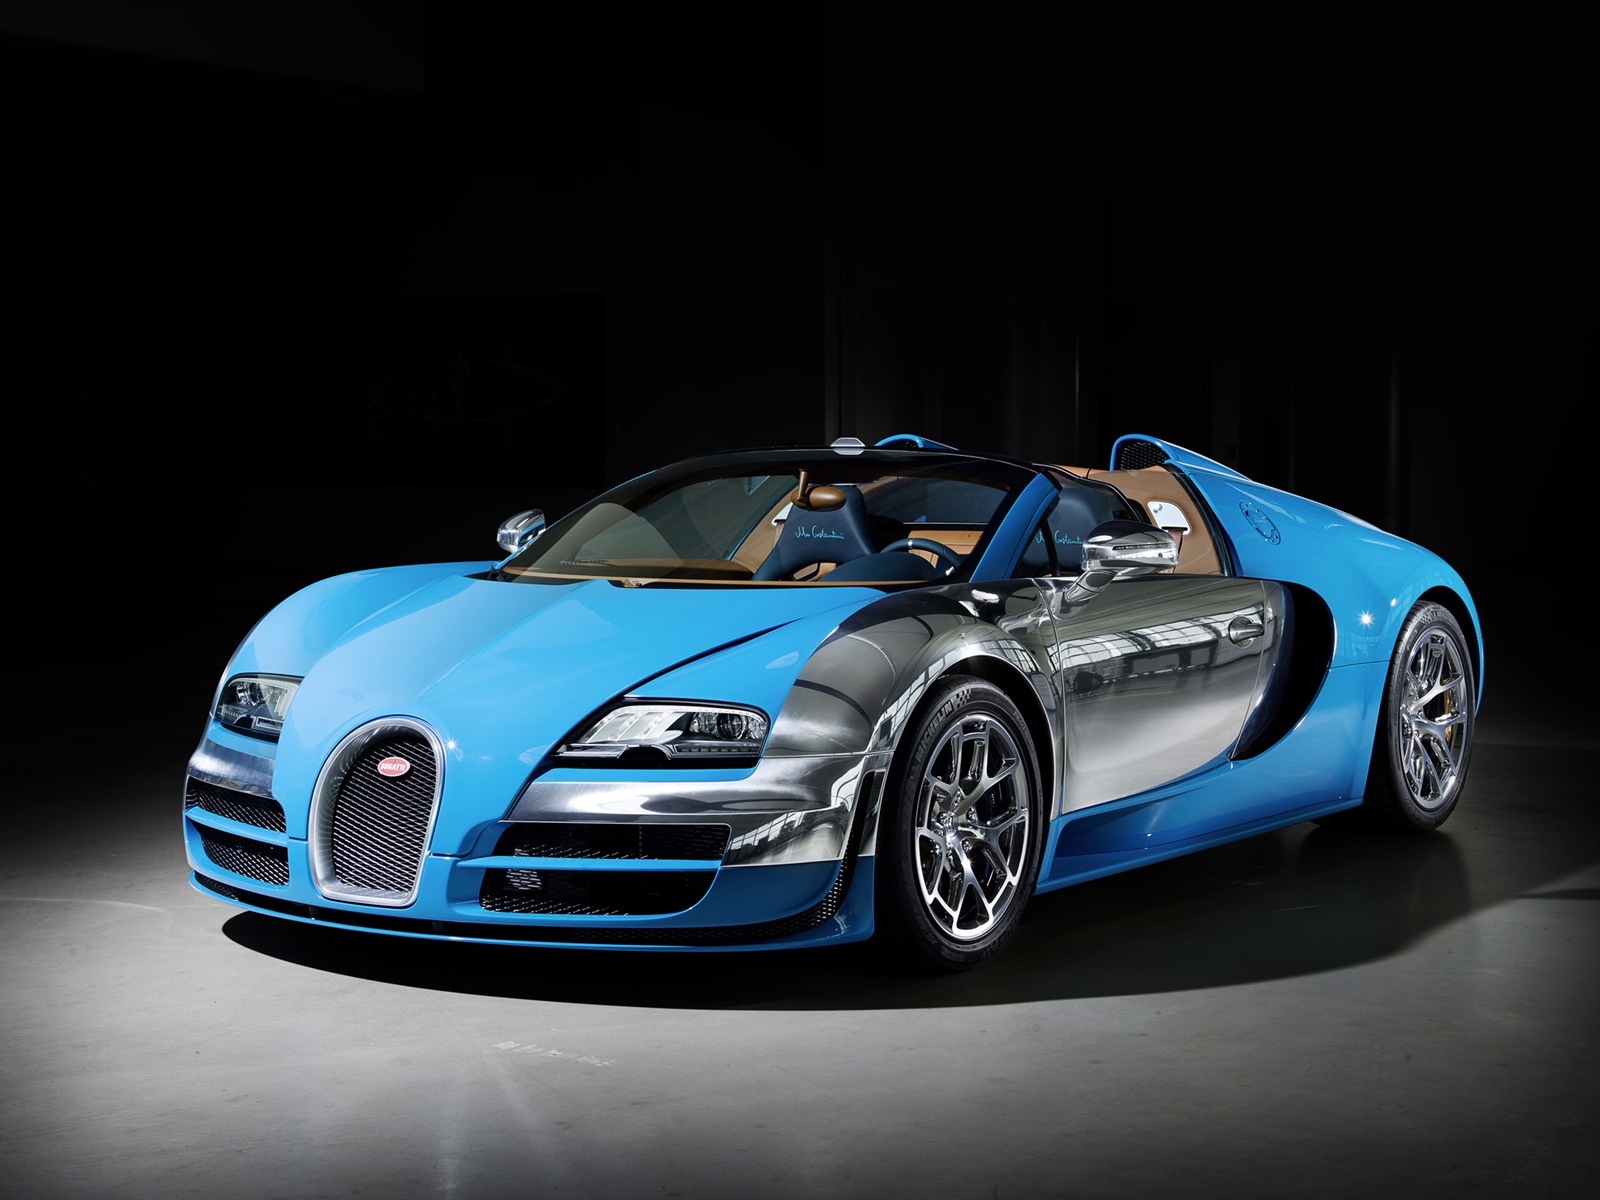 2013 Bugatti Veyron 16.4 Grand Sport Vitesse supercar fondos de pantalla de alta definición #1 - 1600x1200